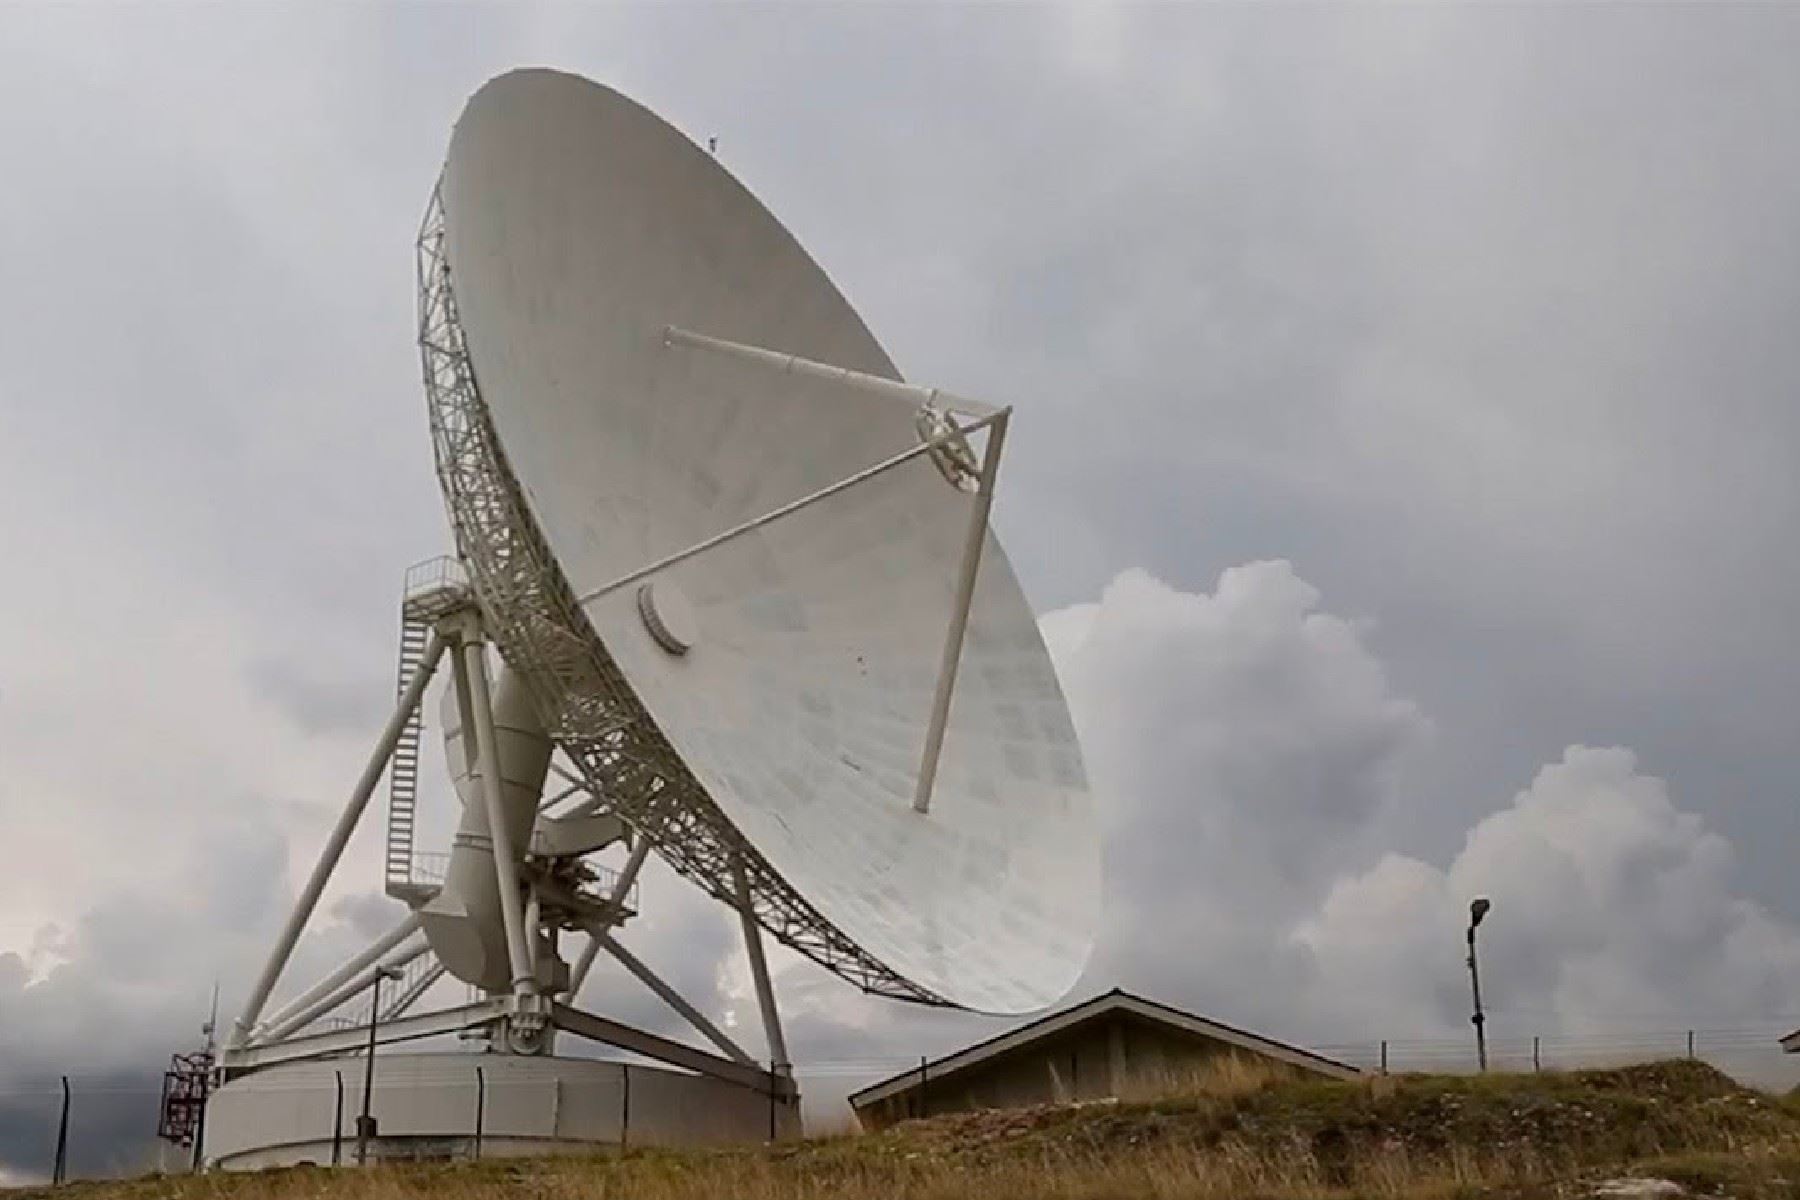 Lo  32 metros de diámetro y su ubicación estratégica en la sierra peruana hacen del radar de Sicaya el instrumento ideal para ser parte del monitoreo de misiones de exploración lunar.